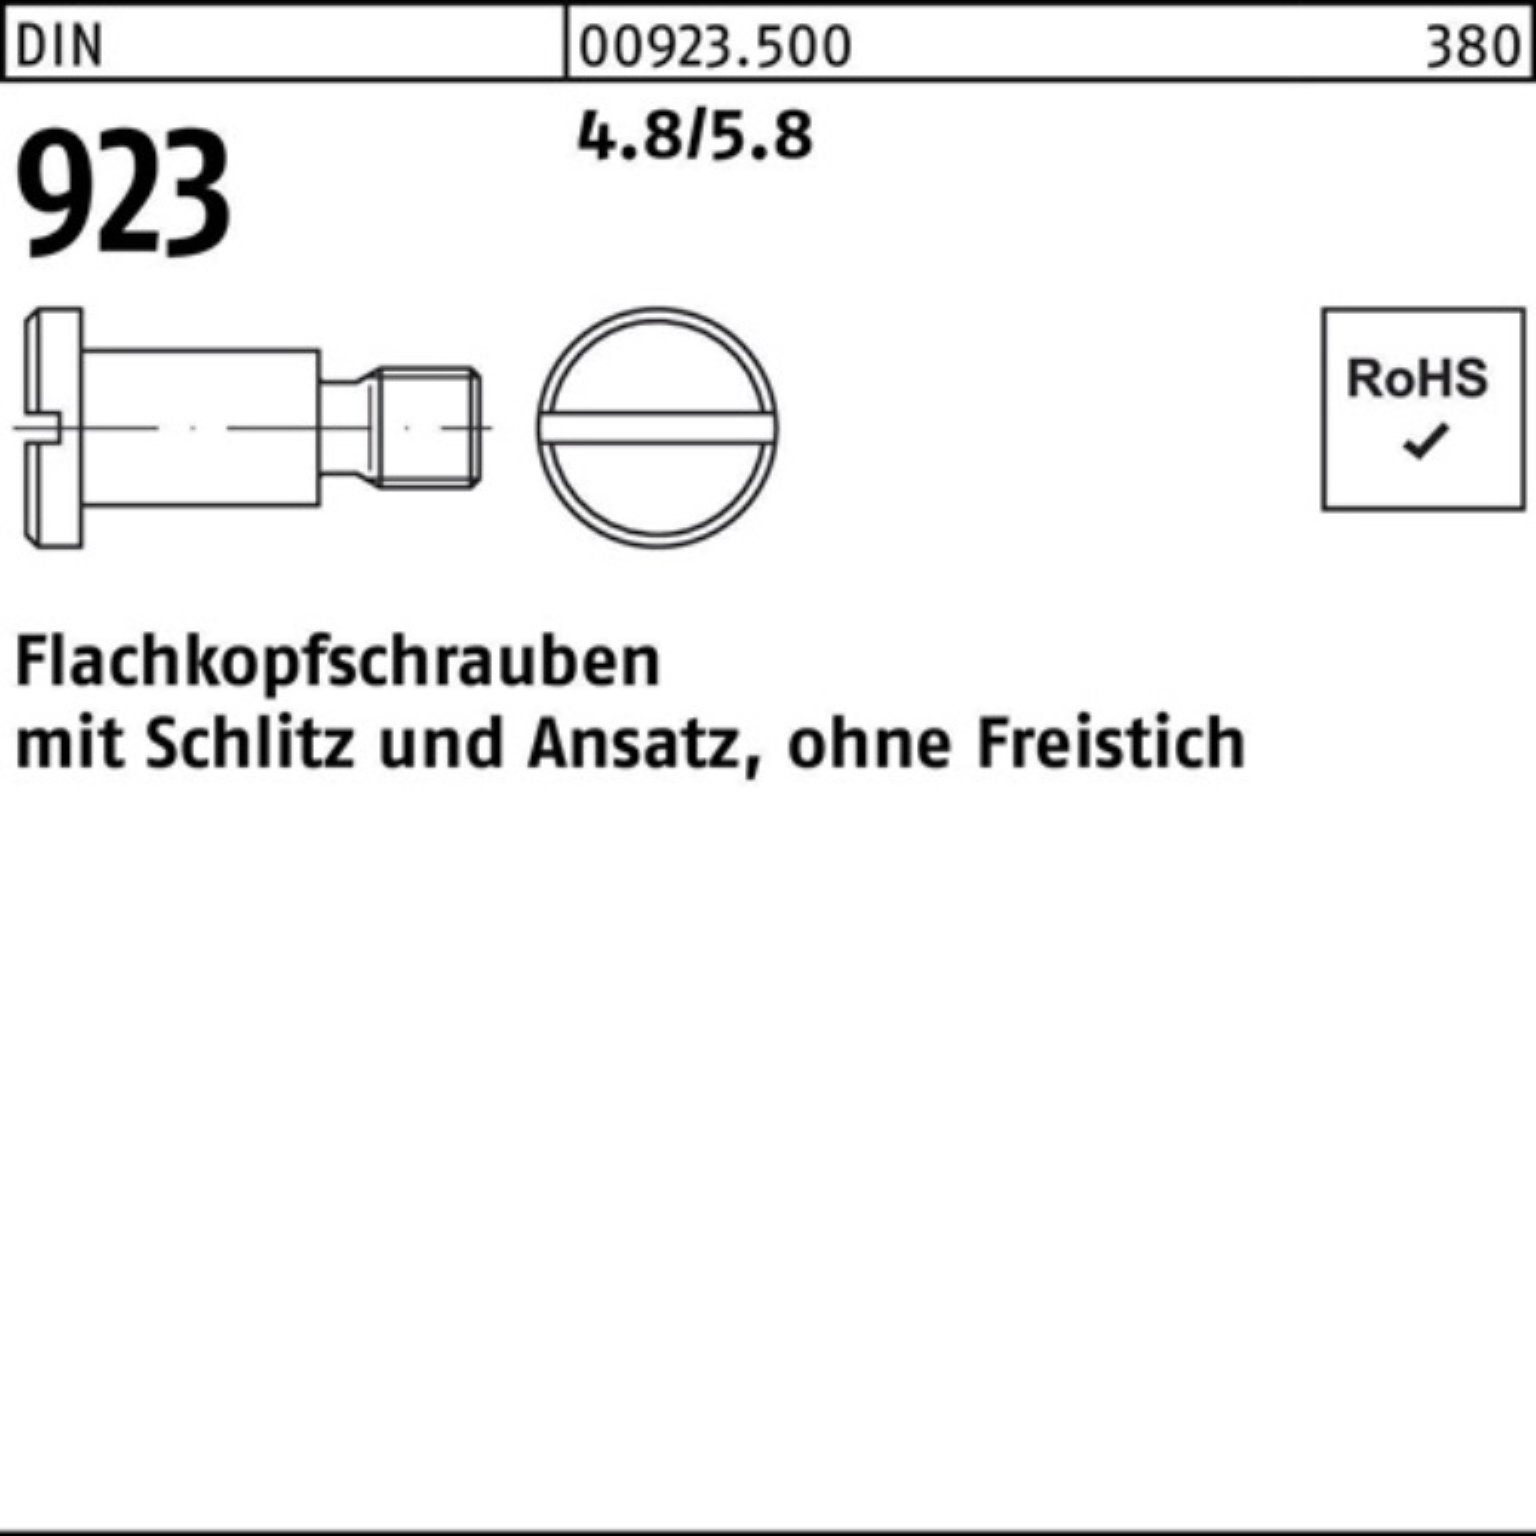 Reyher Flachkopfschraube DIN 923 M8x25x11,0 Schraube Schlitz/Ansatz Pack 100er 4.8/5.8